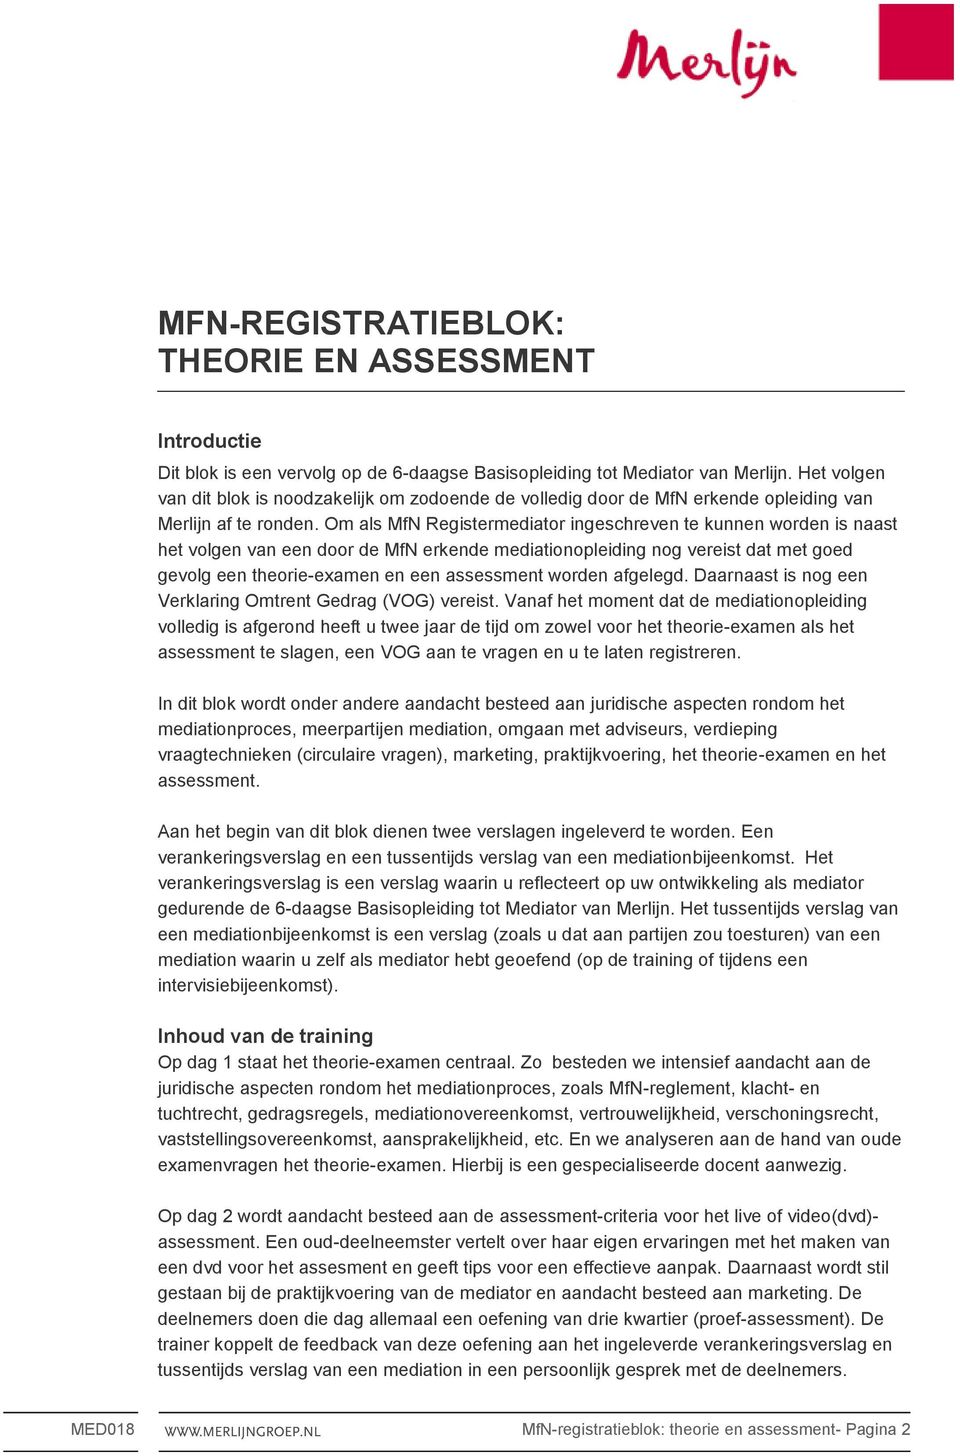 Om als MfN Registermediator ingeschreven te kunnen worden is naast het volgen van een door de MfN erkende mediationopleiding nog vereist dat met goed gevolg een theorie-examen en een assessment